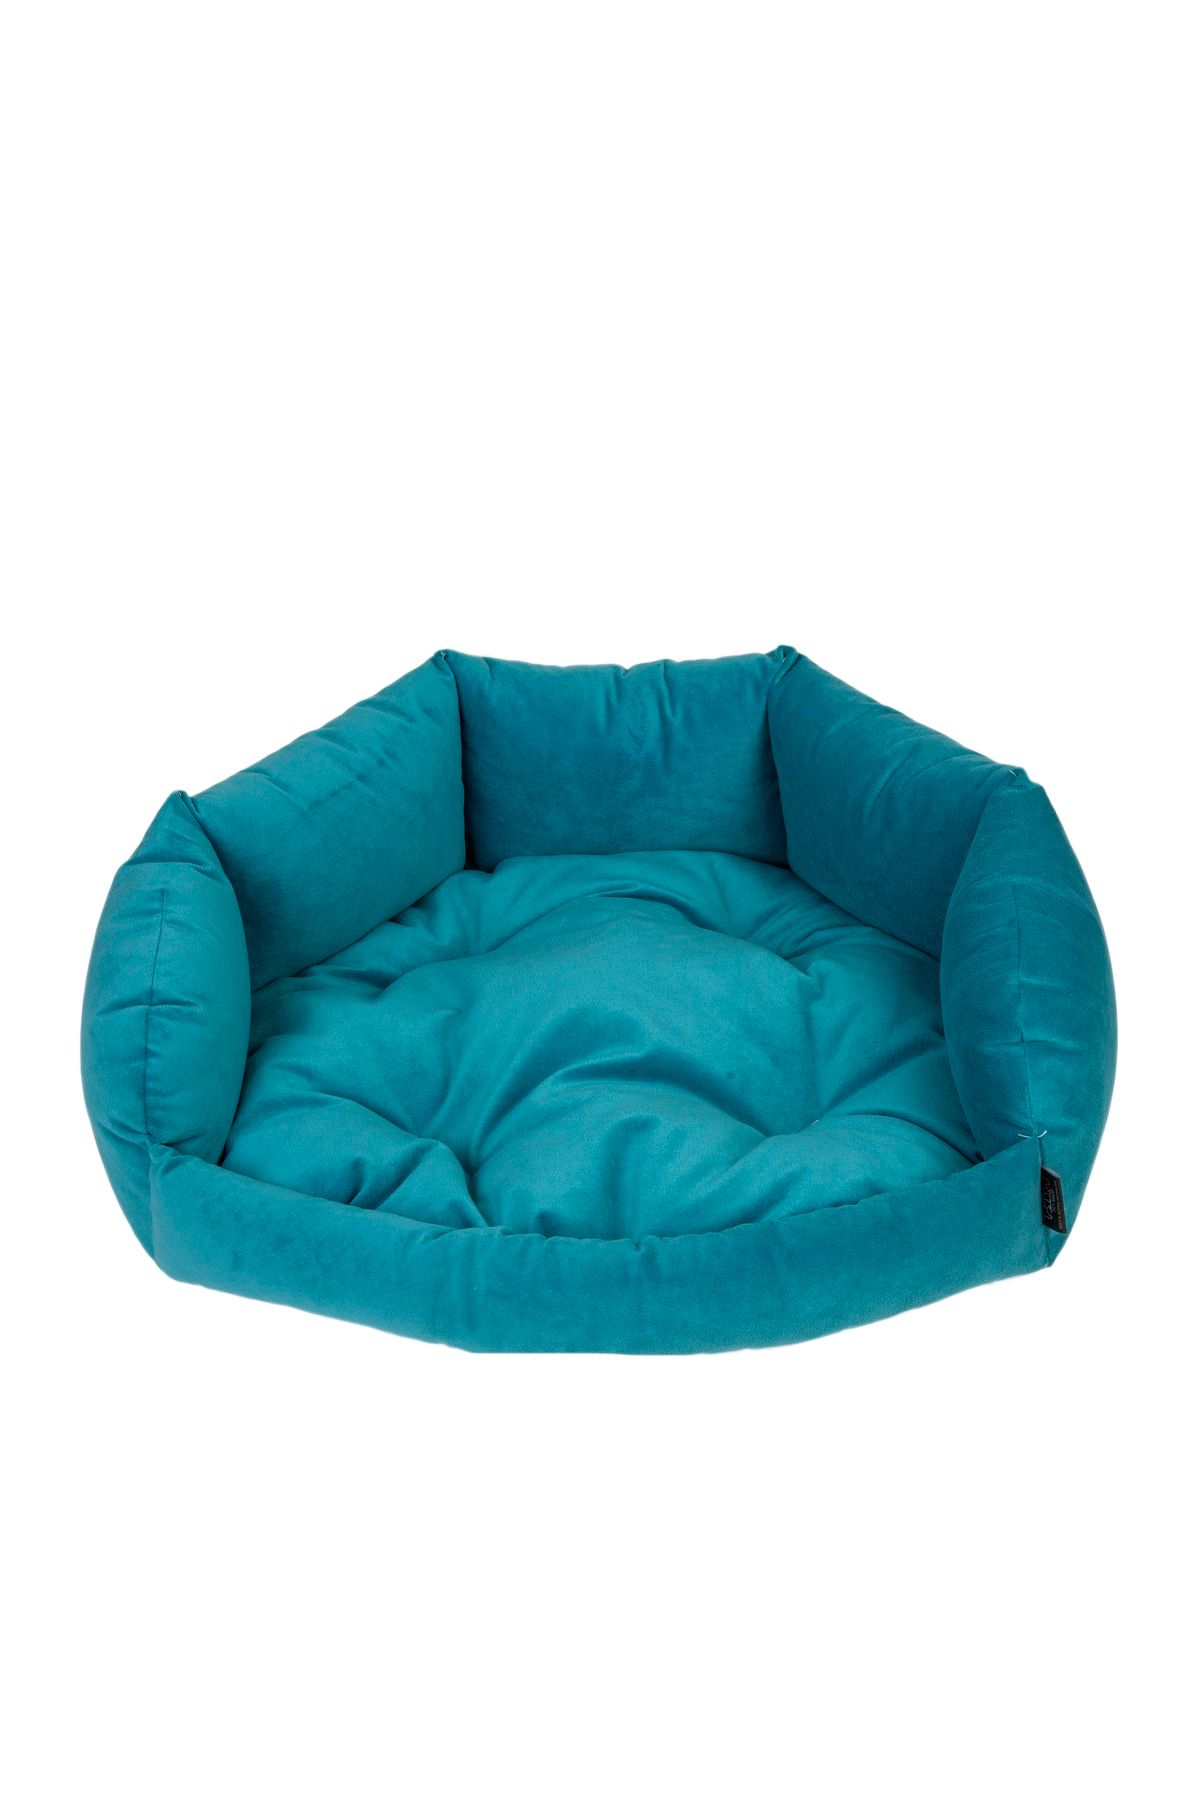 RENKLİ EV TASARIM Milano Model Mavi Aynı Renk Minderli Kedi - Köpek Yatakları